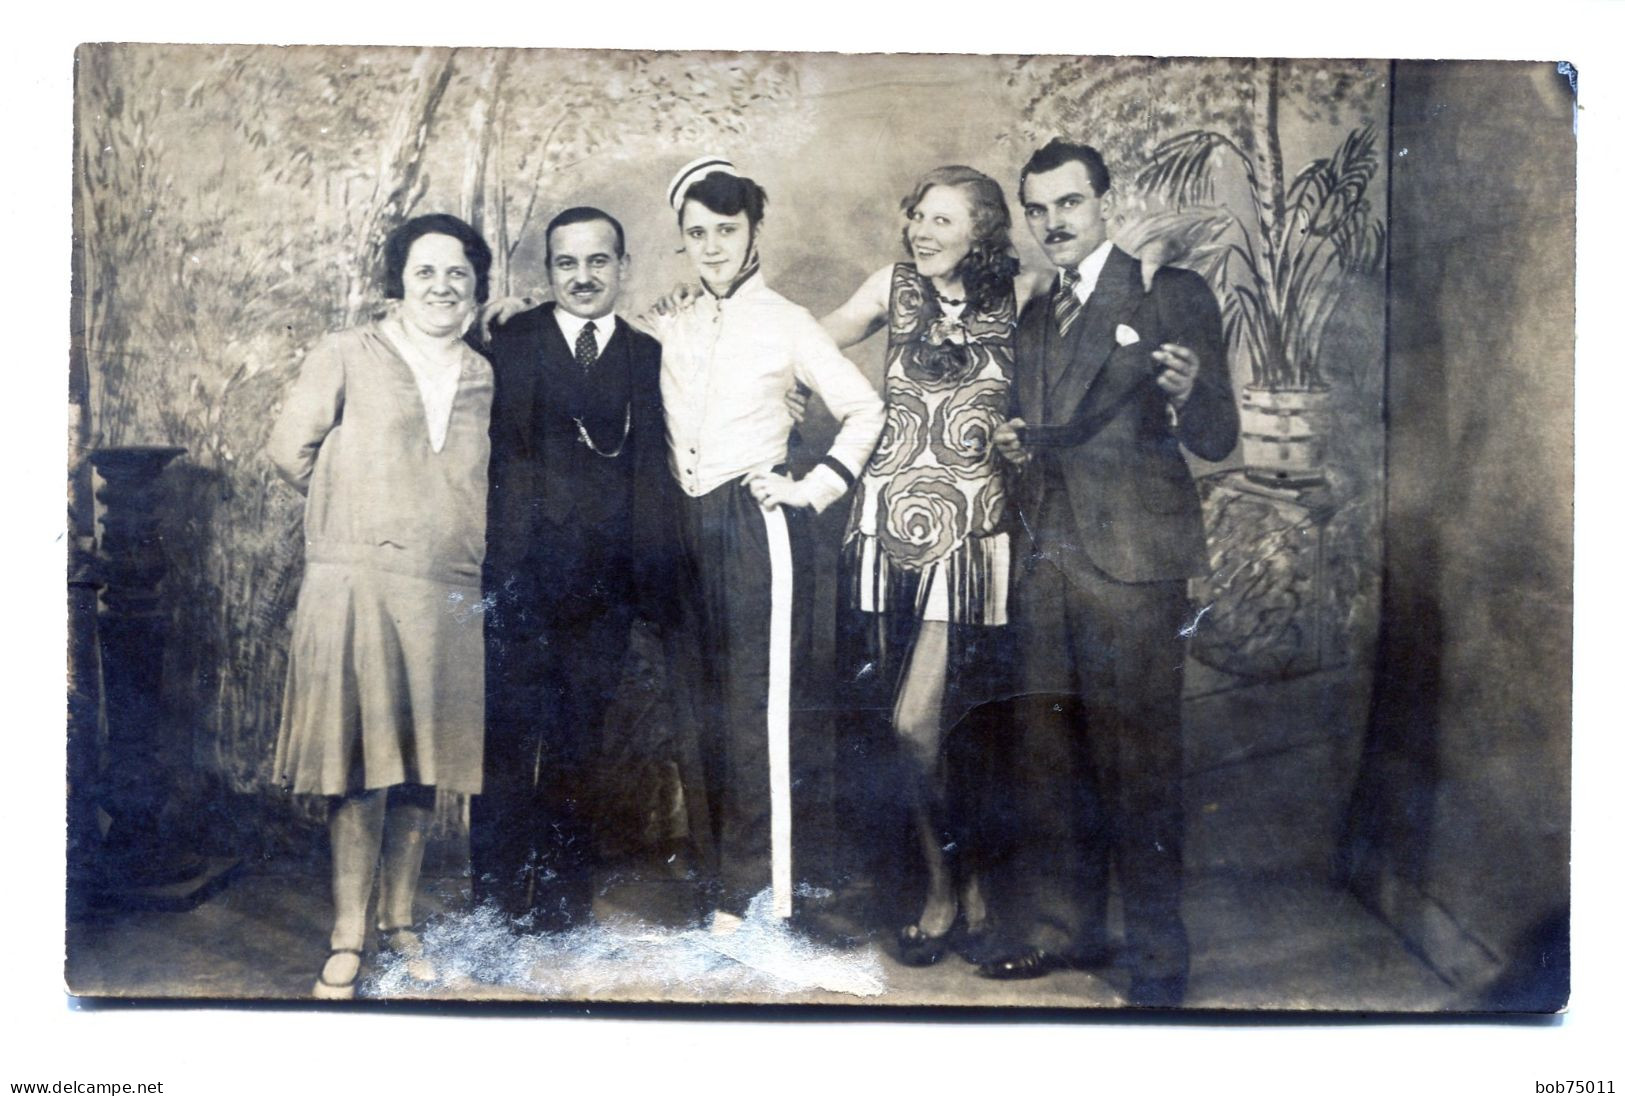 Carte Photo D'une Famille élégante Posant Dans Un Studio Photo Vers 1920 - Personnes Anonymes